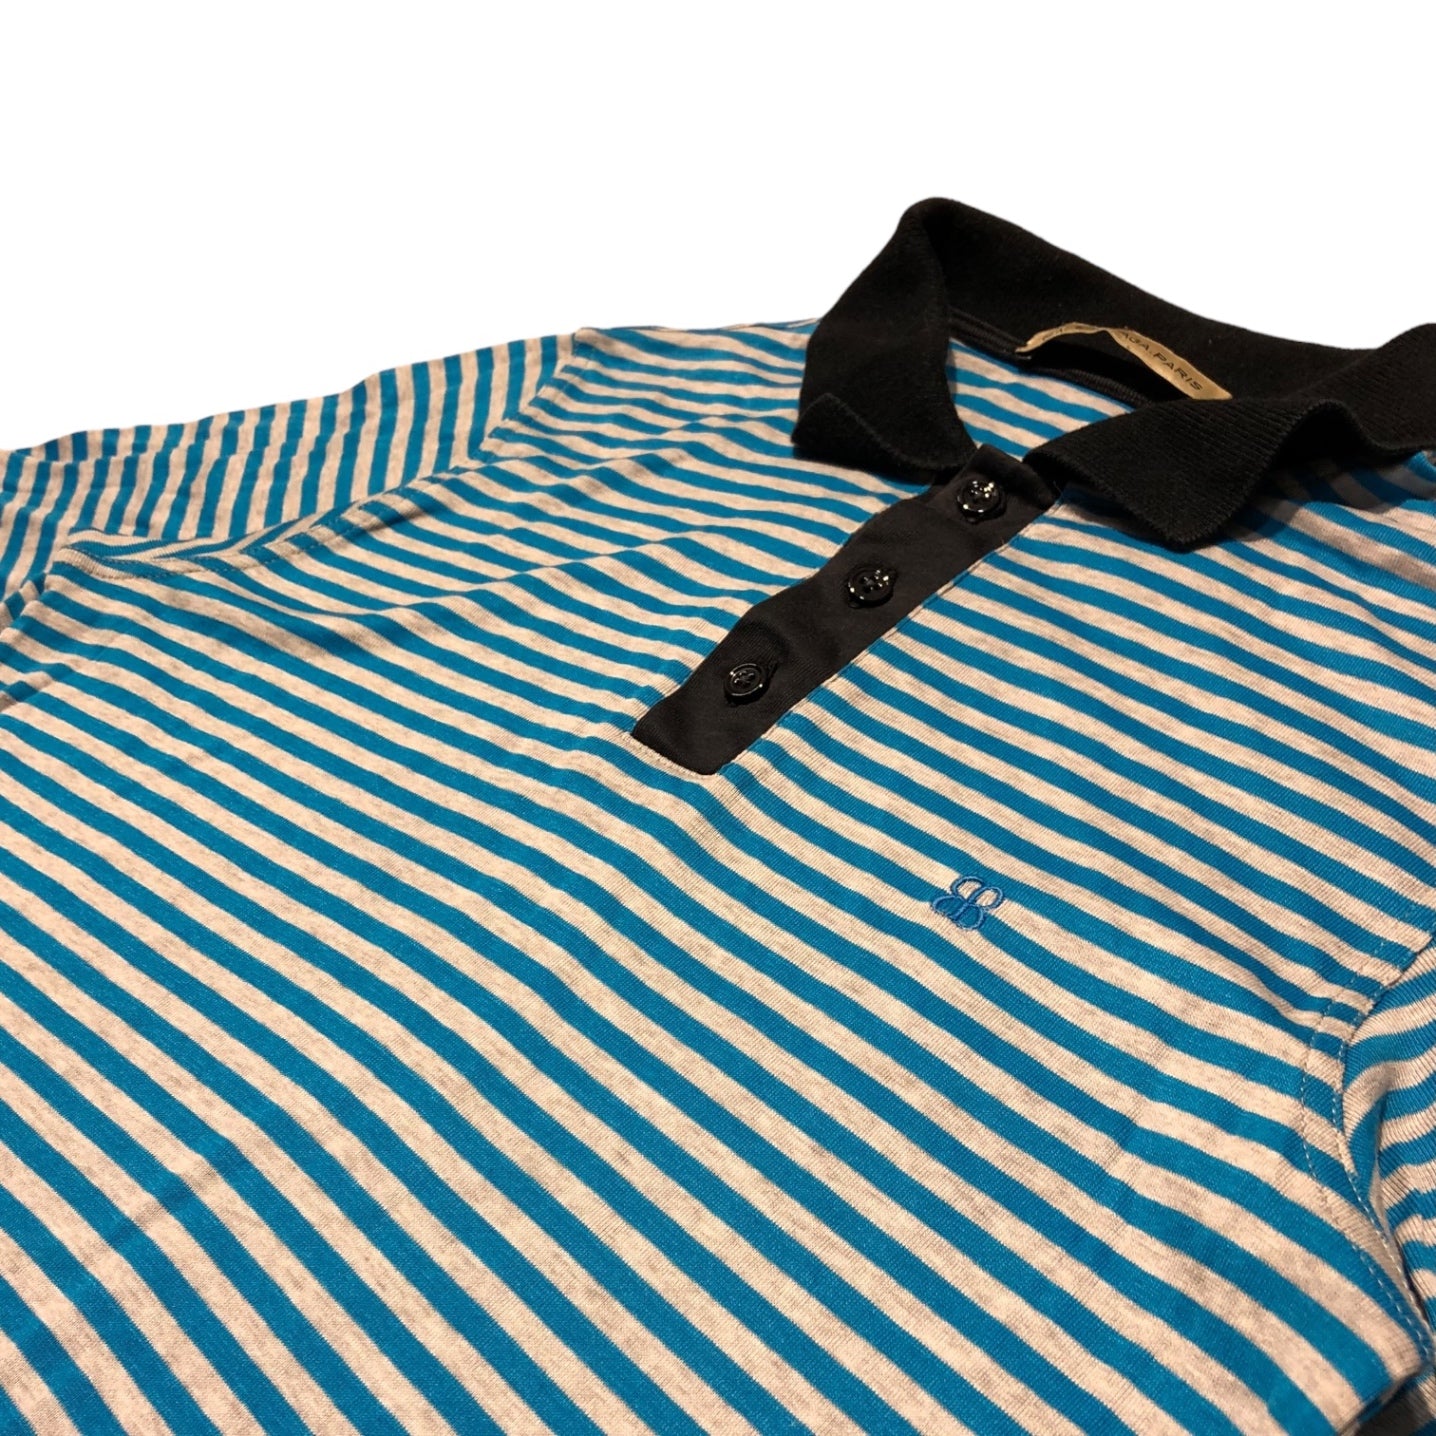 BALENCIAGA(バレンシアガ) BB ロゴ ボーダー 半袖 ポロシャツ S ブルー×グレー